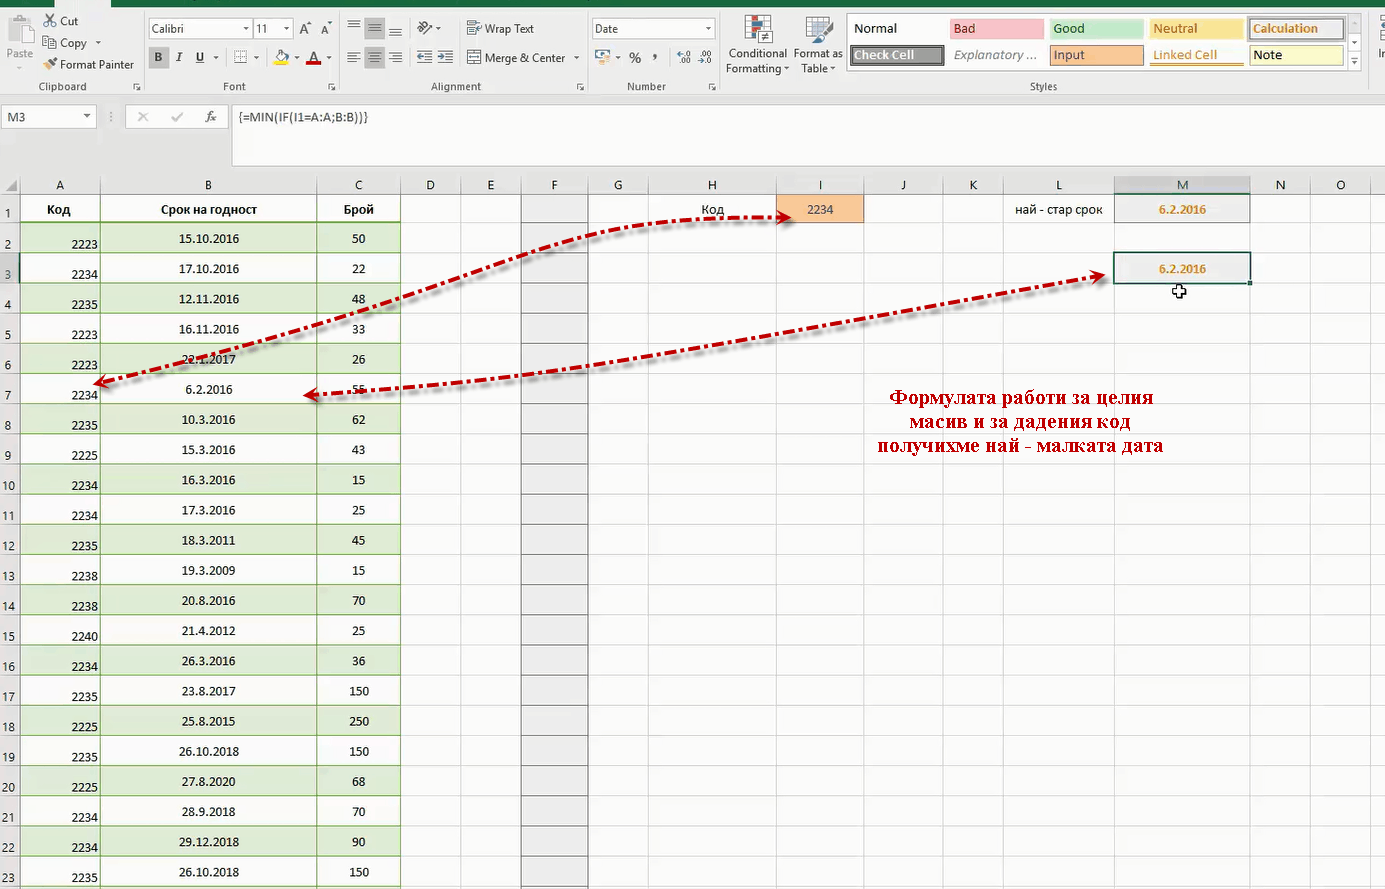 Дата с най-стар срок по даден критерий в Excel